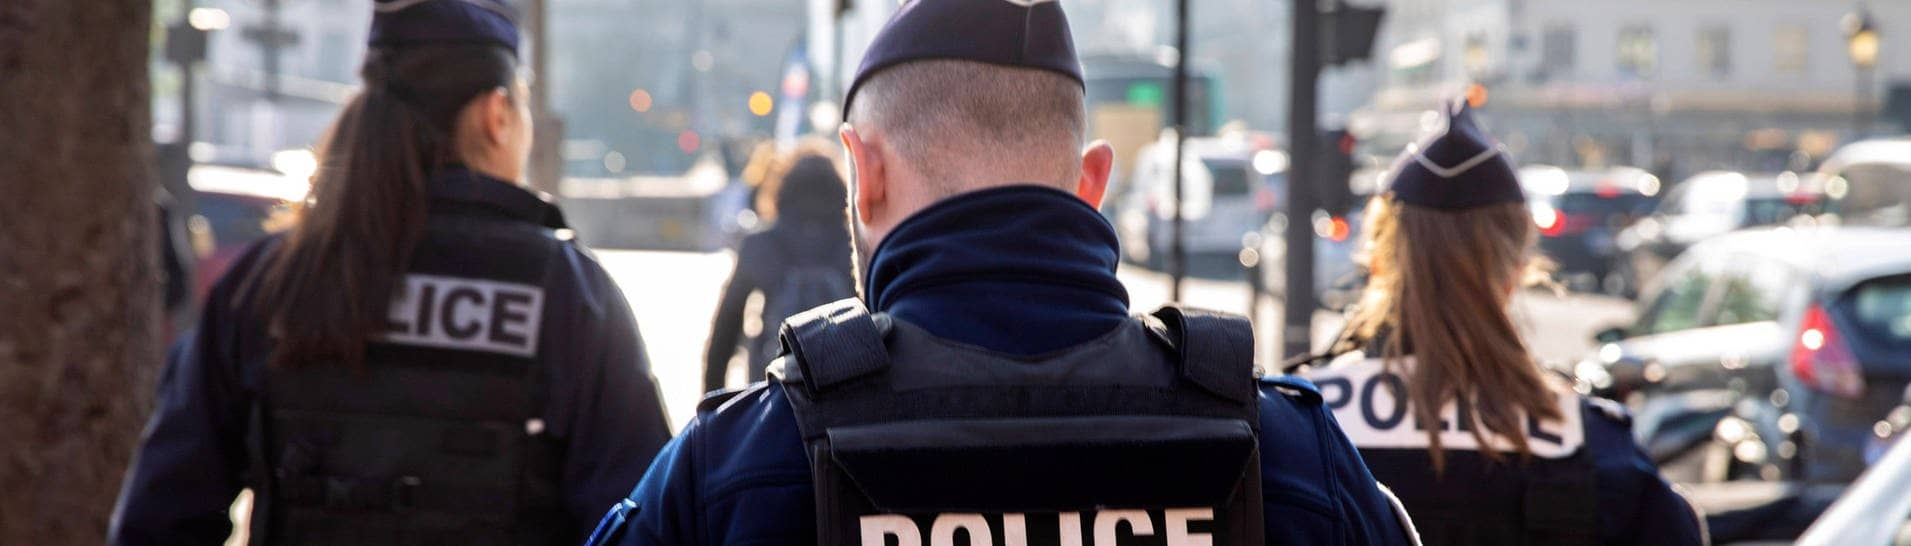 Polizeistreife der französischen Nationalpolizei. Man sieht drei Polizisten von hinten (Foto: IMAGO, IMAGO / Future Image)